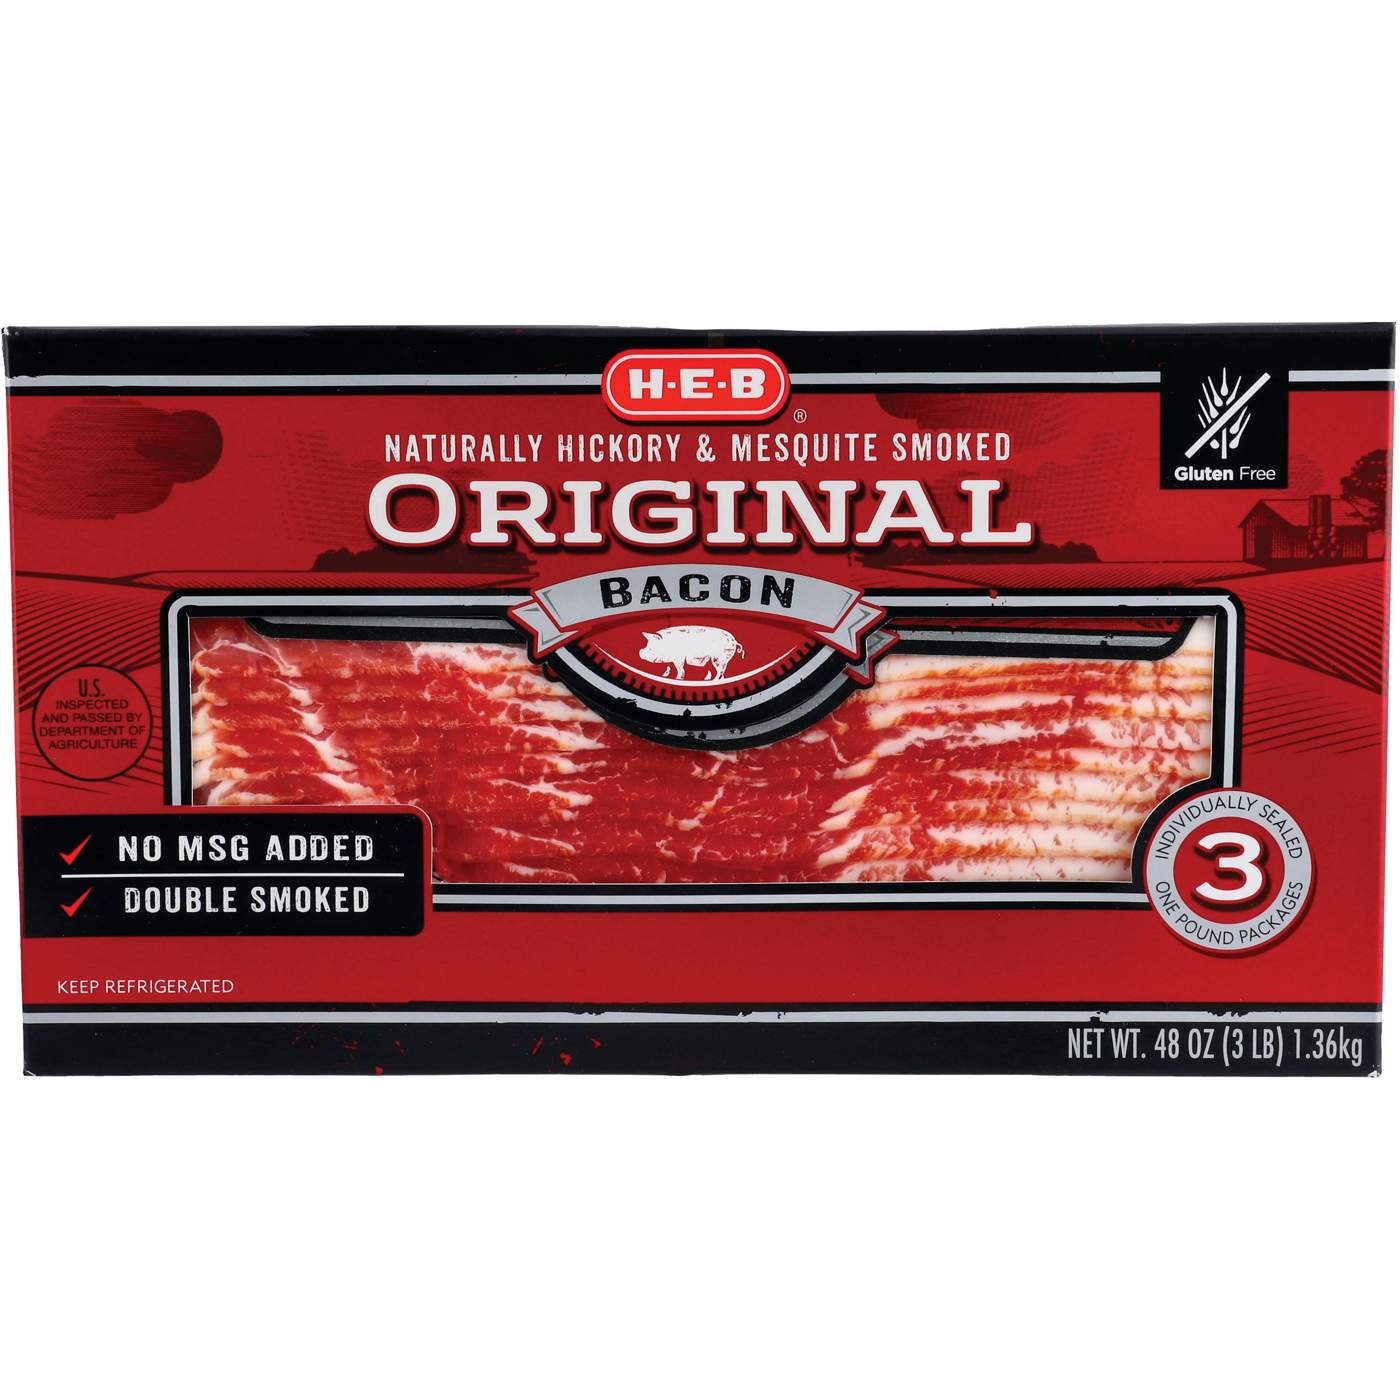 H-E-B Original Bacon; image 1 of 2